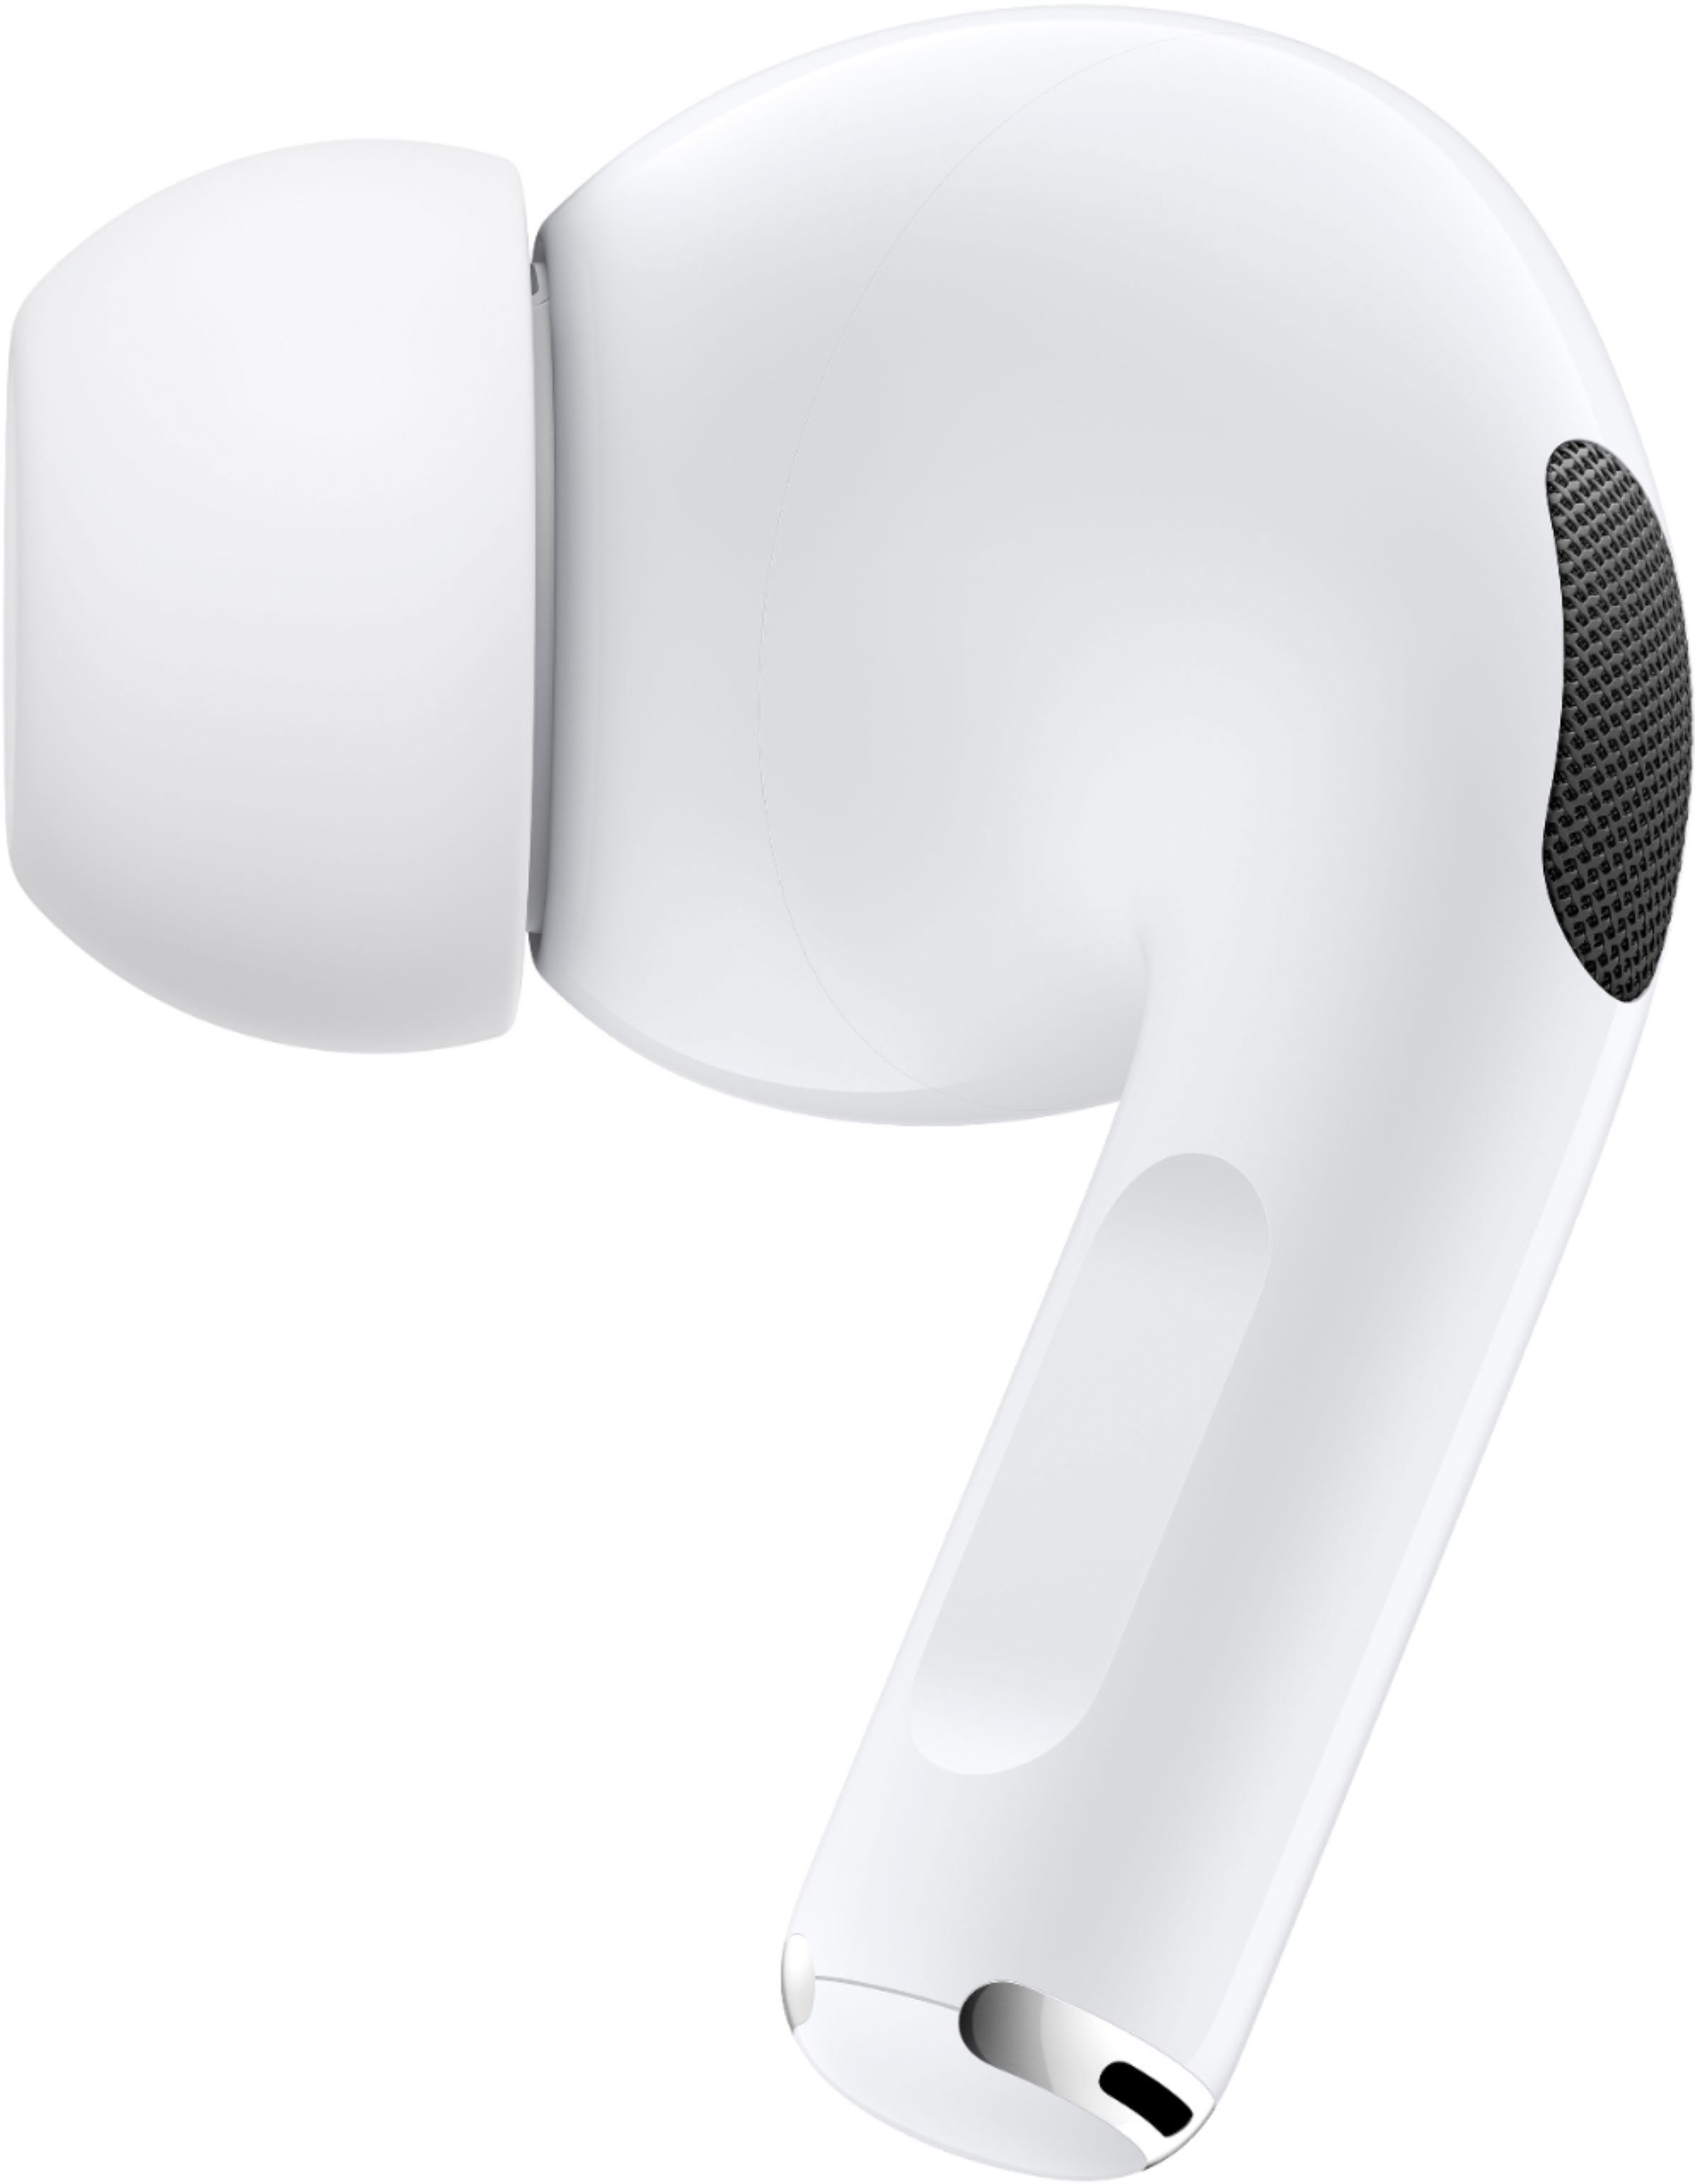 オーディオ機器 イヤフォン Best Buy: Apple AirPods Pro White MWP22AM/A